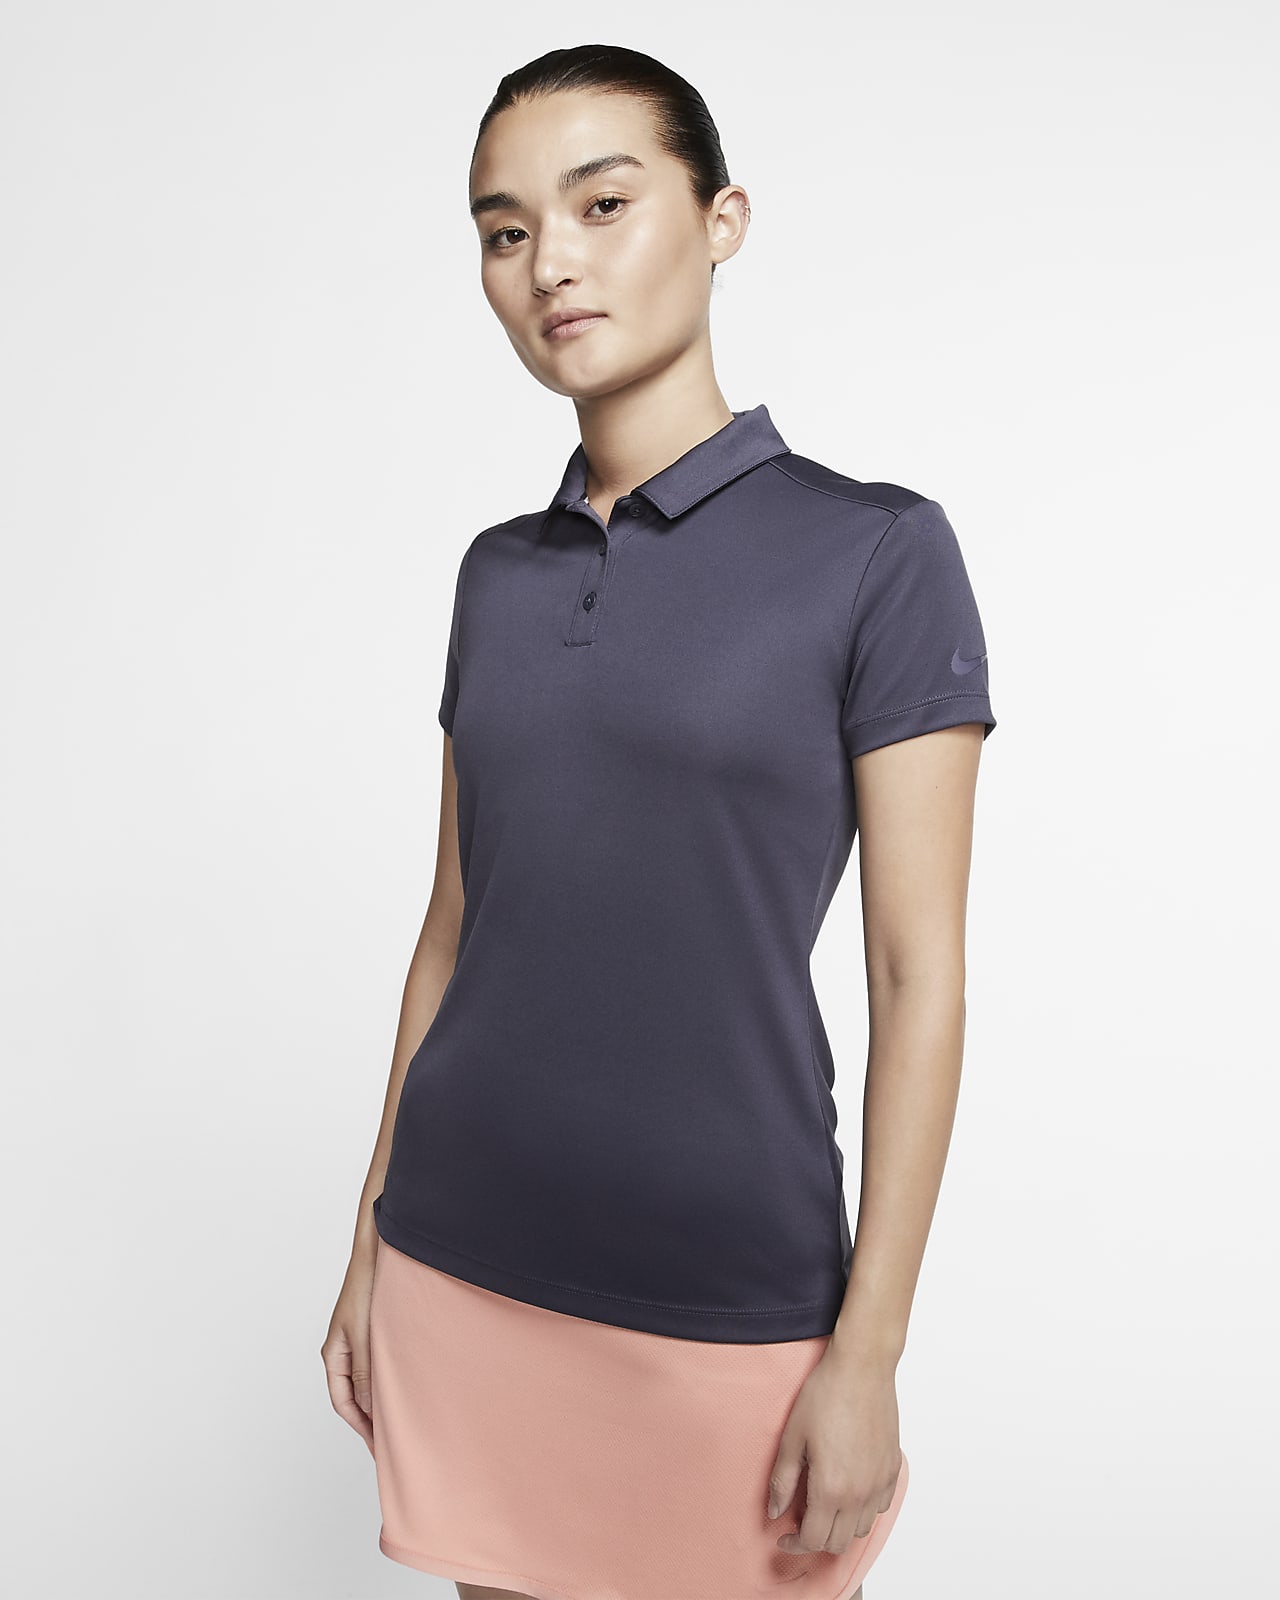 nike dri fit womens golf shirts Online 